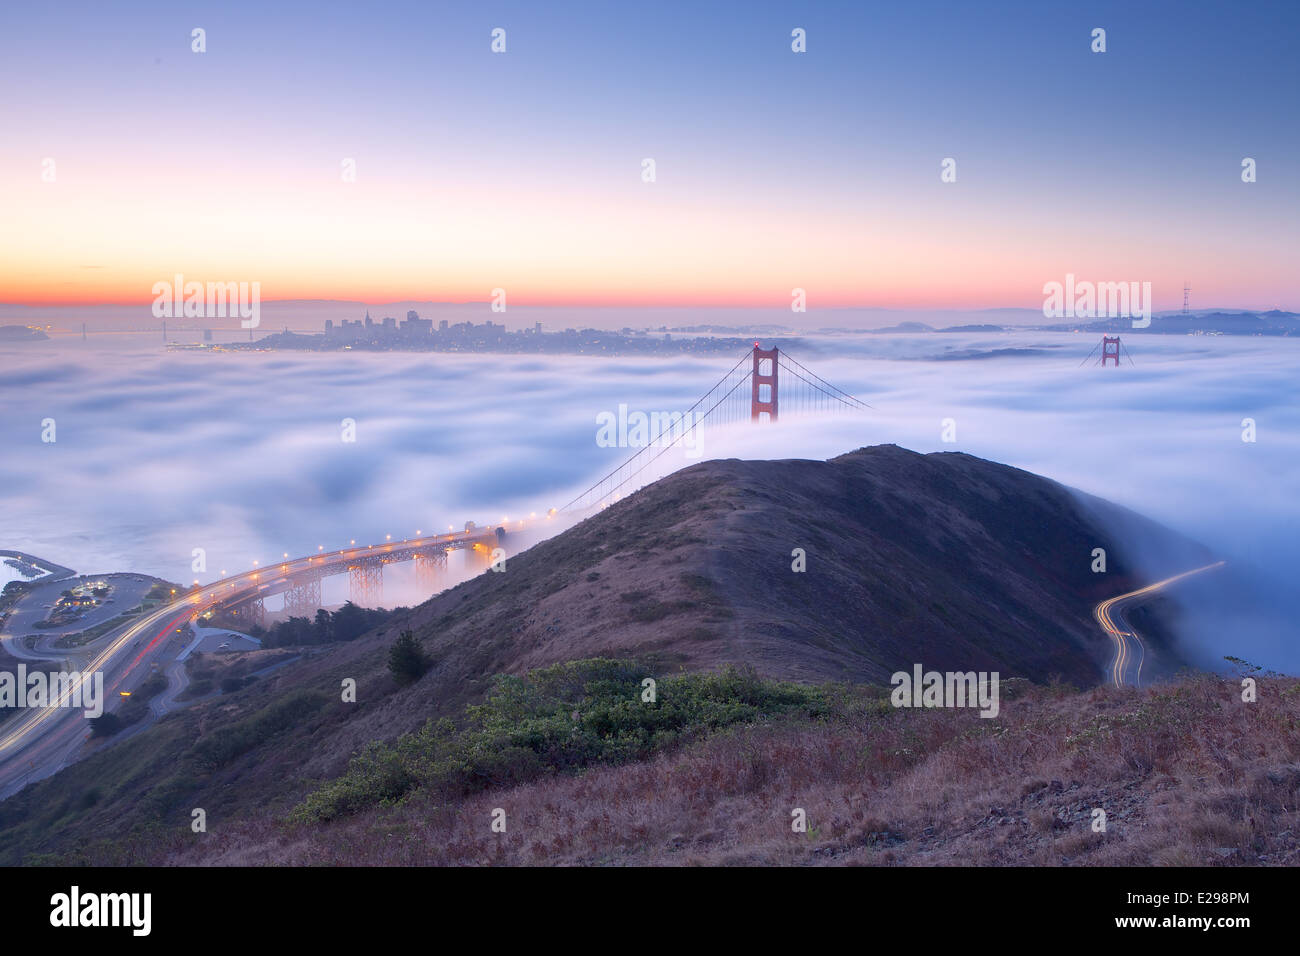 Una hermosa niebla en las redadas antes del amanecer de la Bahía de San Francisco, con vistas de Marin y el Golden Gate Bridge. Foto de stock